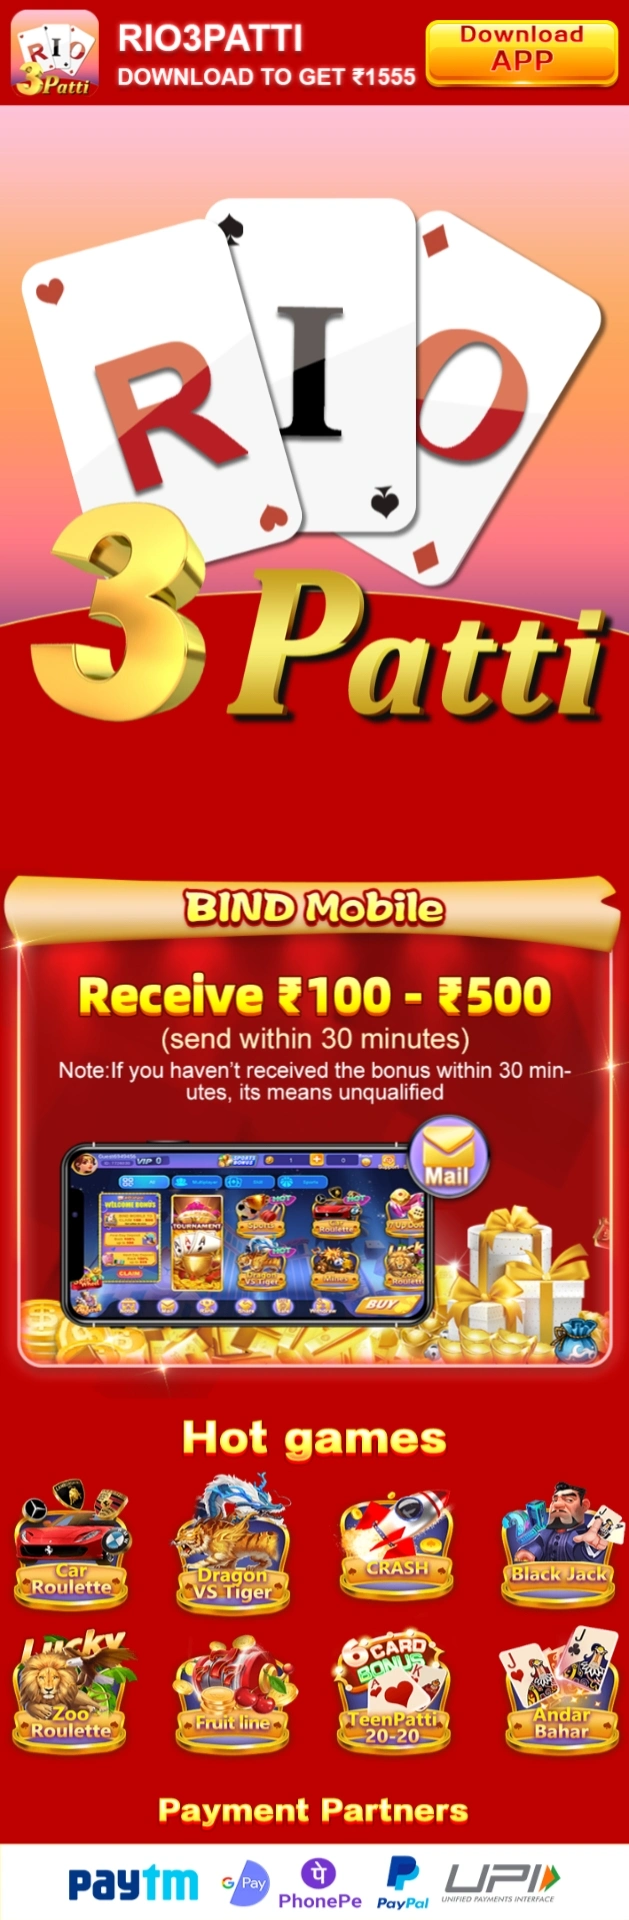 RIO 3Patti App - India Game Download